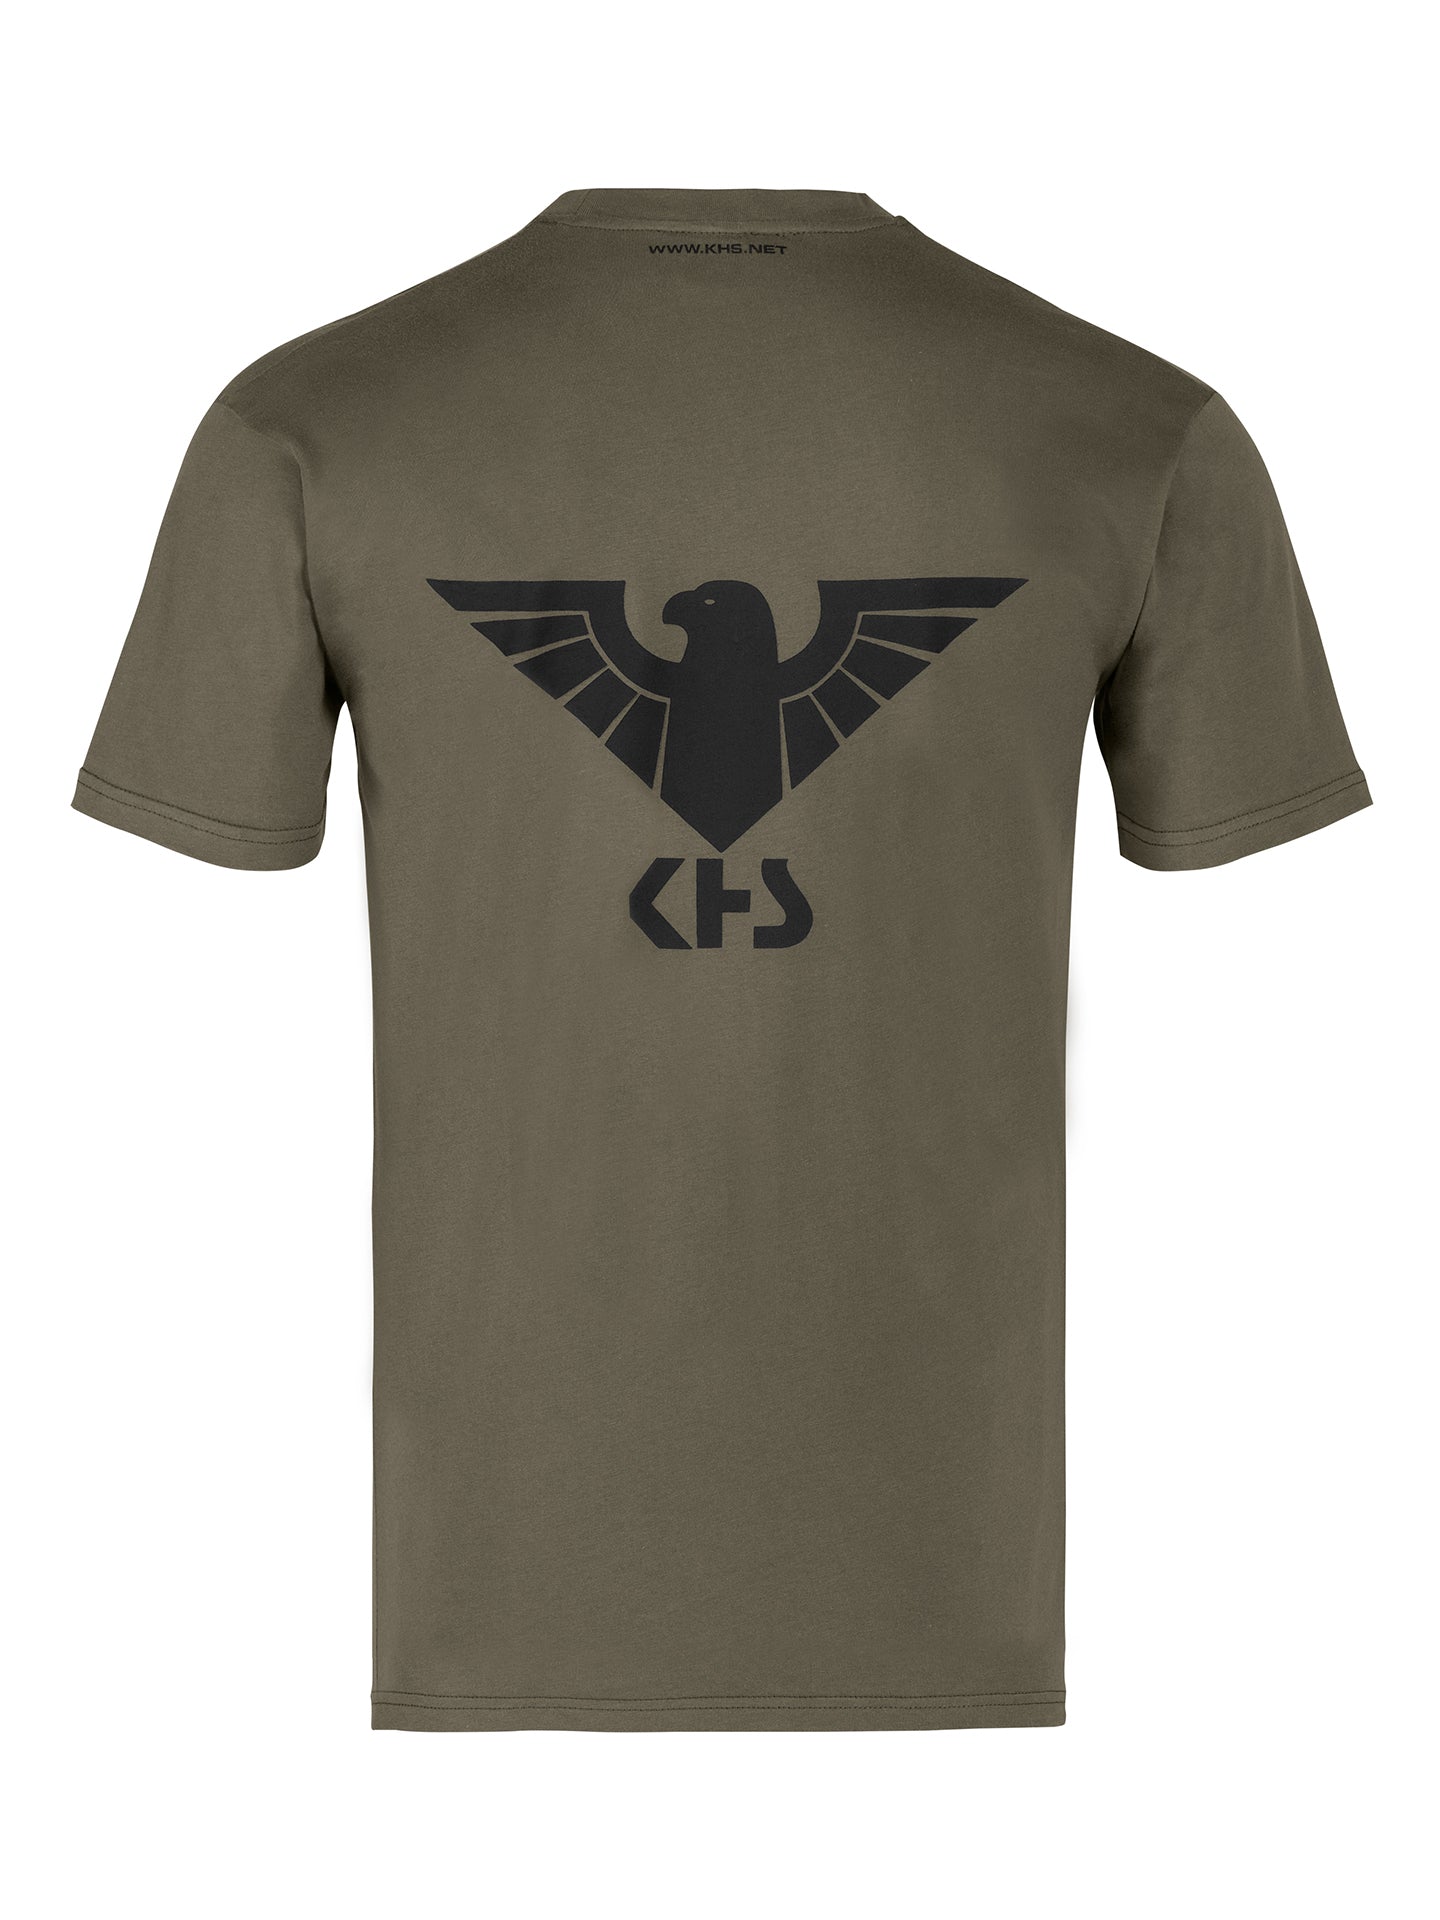 KHS T-Shirt Steingrau-Oliv